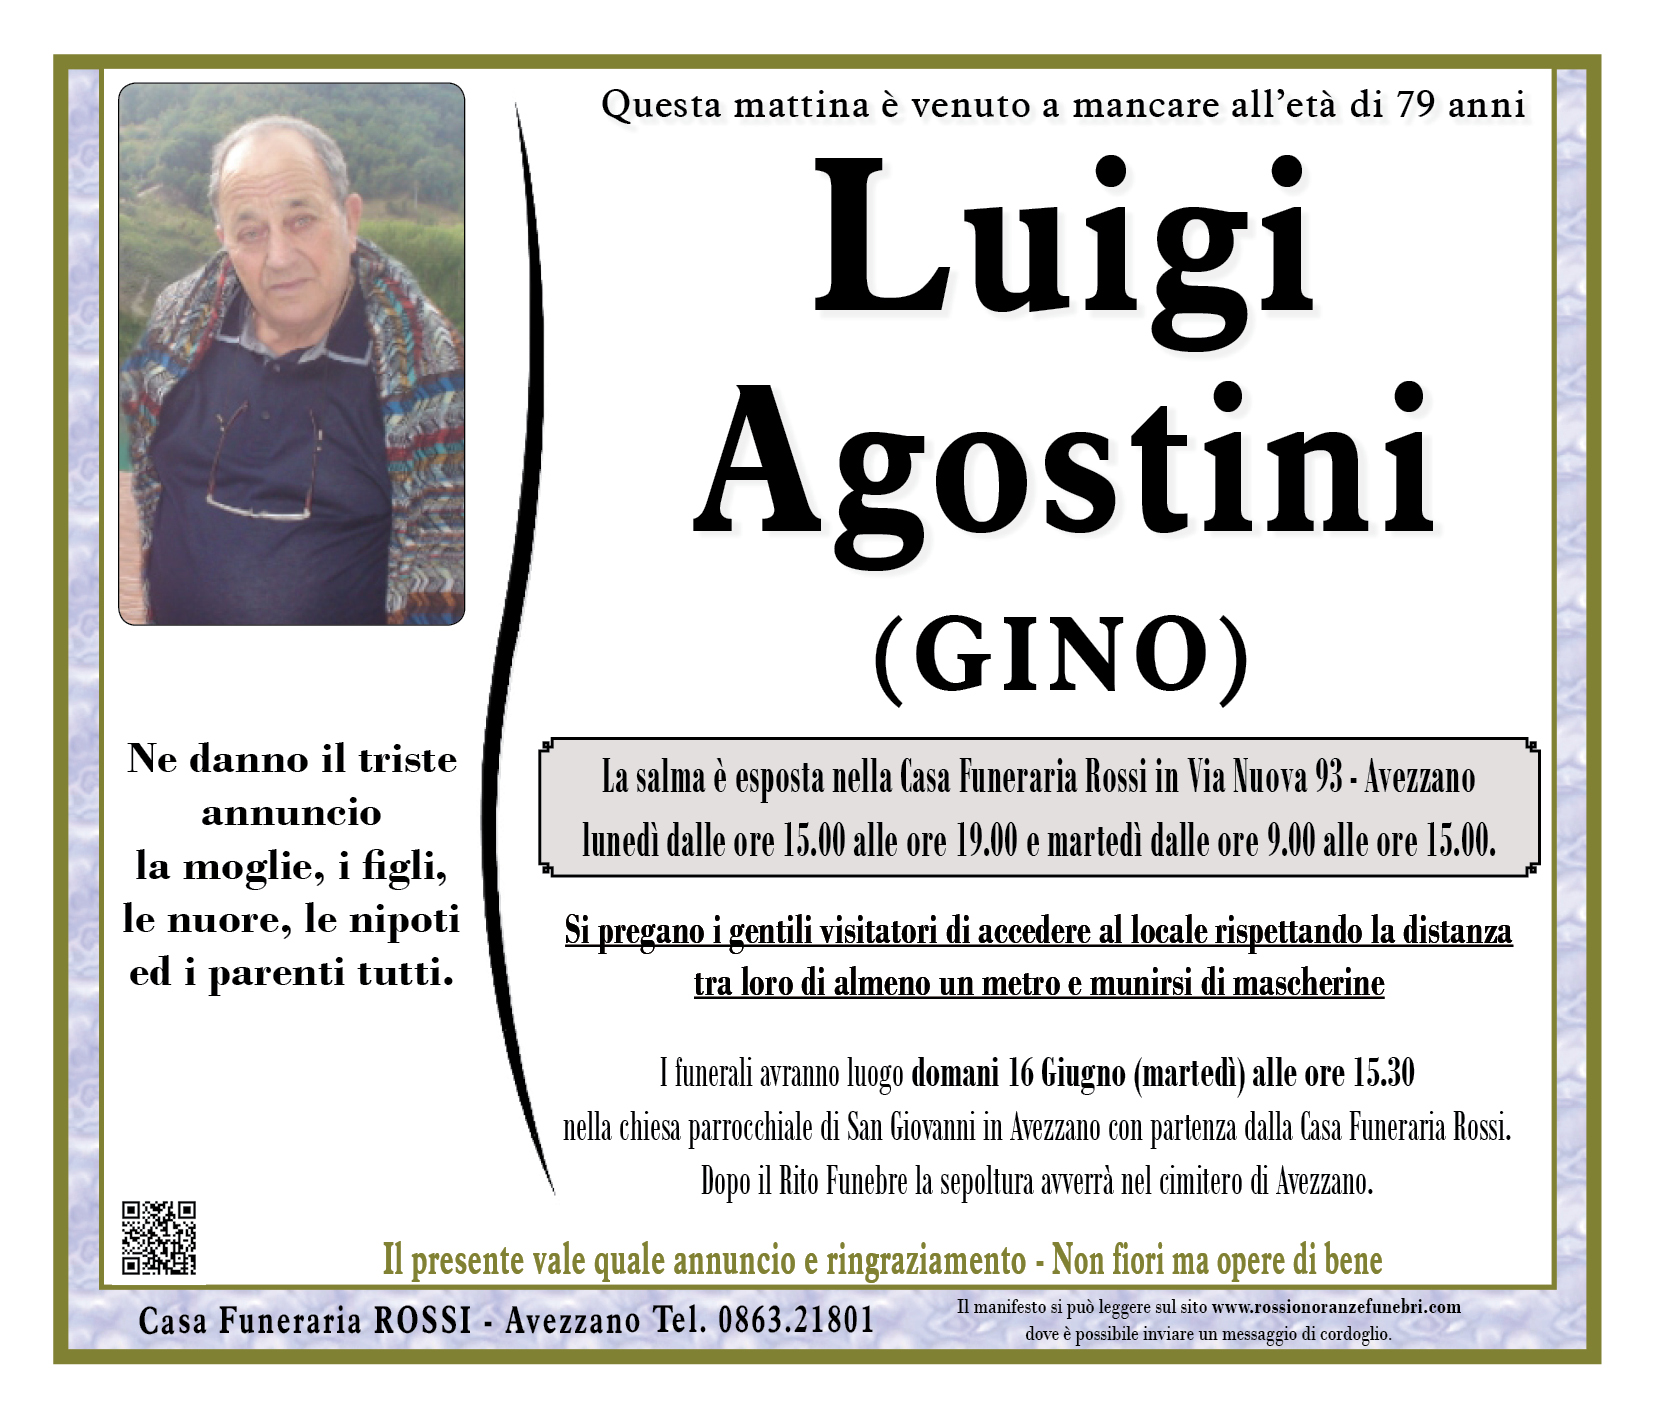 Luigi Agostini